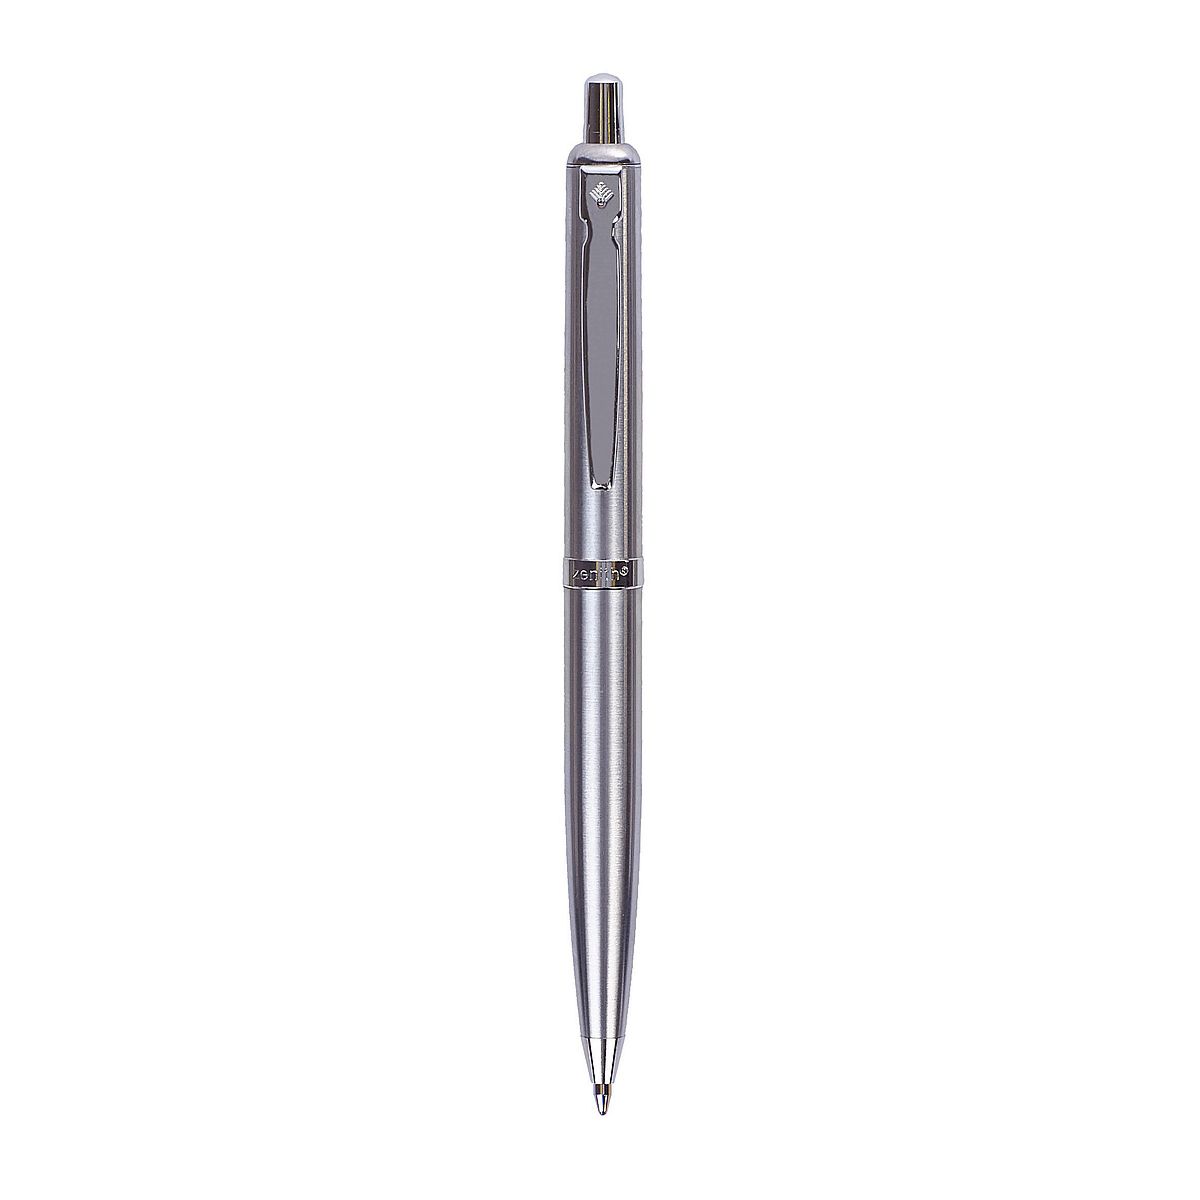 Długopis Zenith 4 Zenith 60 etui niebieski 0,7mm (4601200)